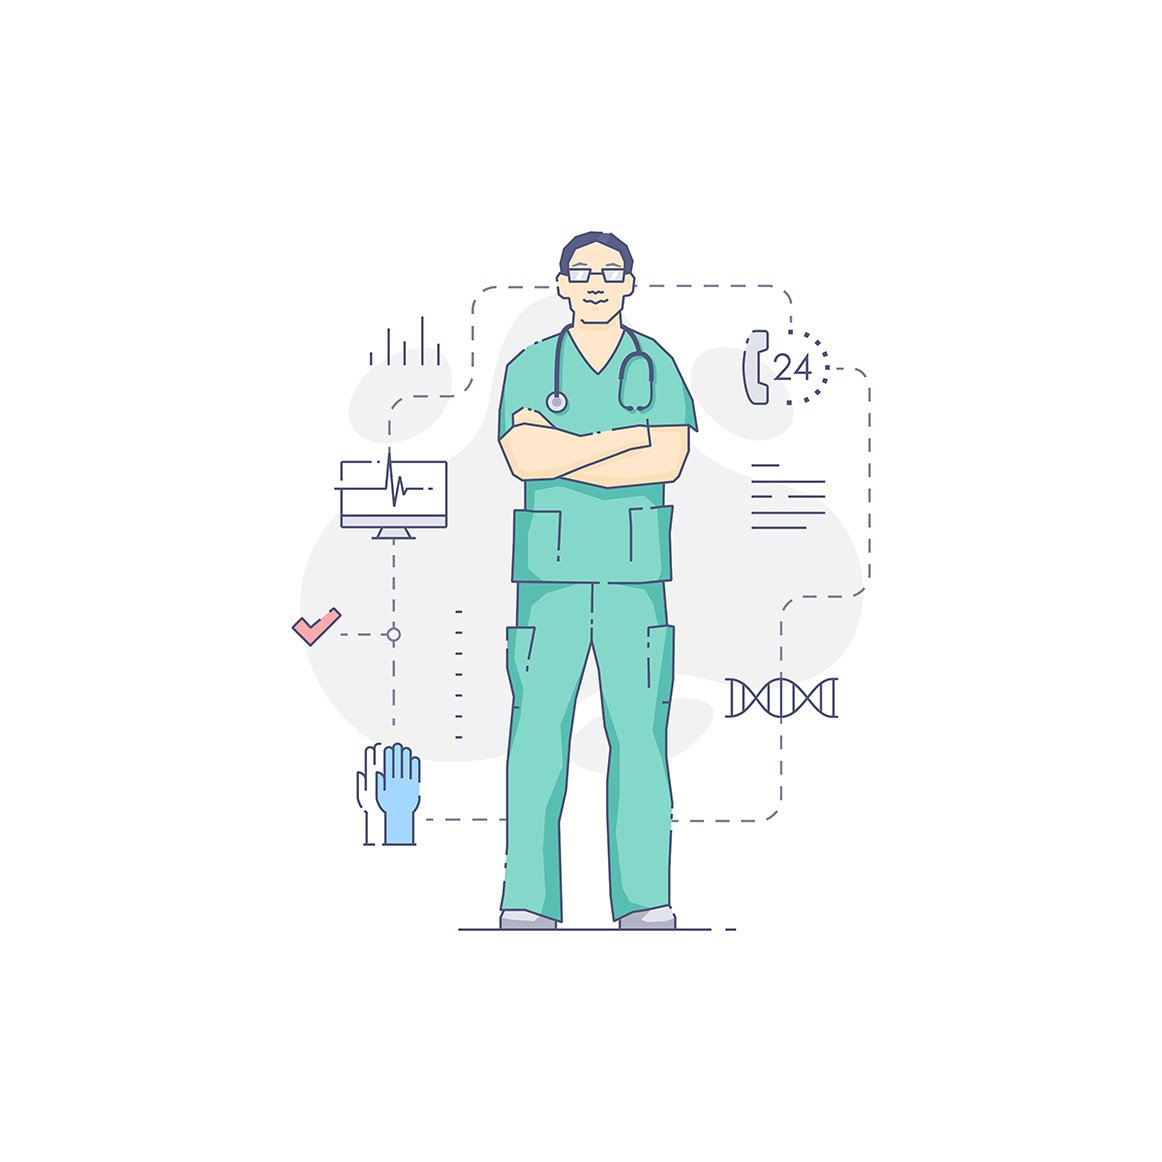 Medical people illustration set preview image.